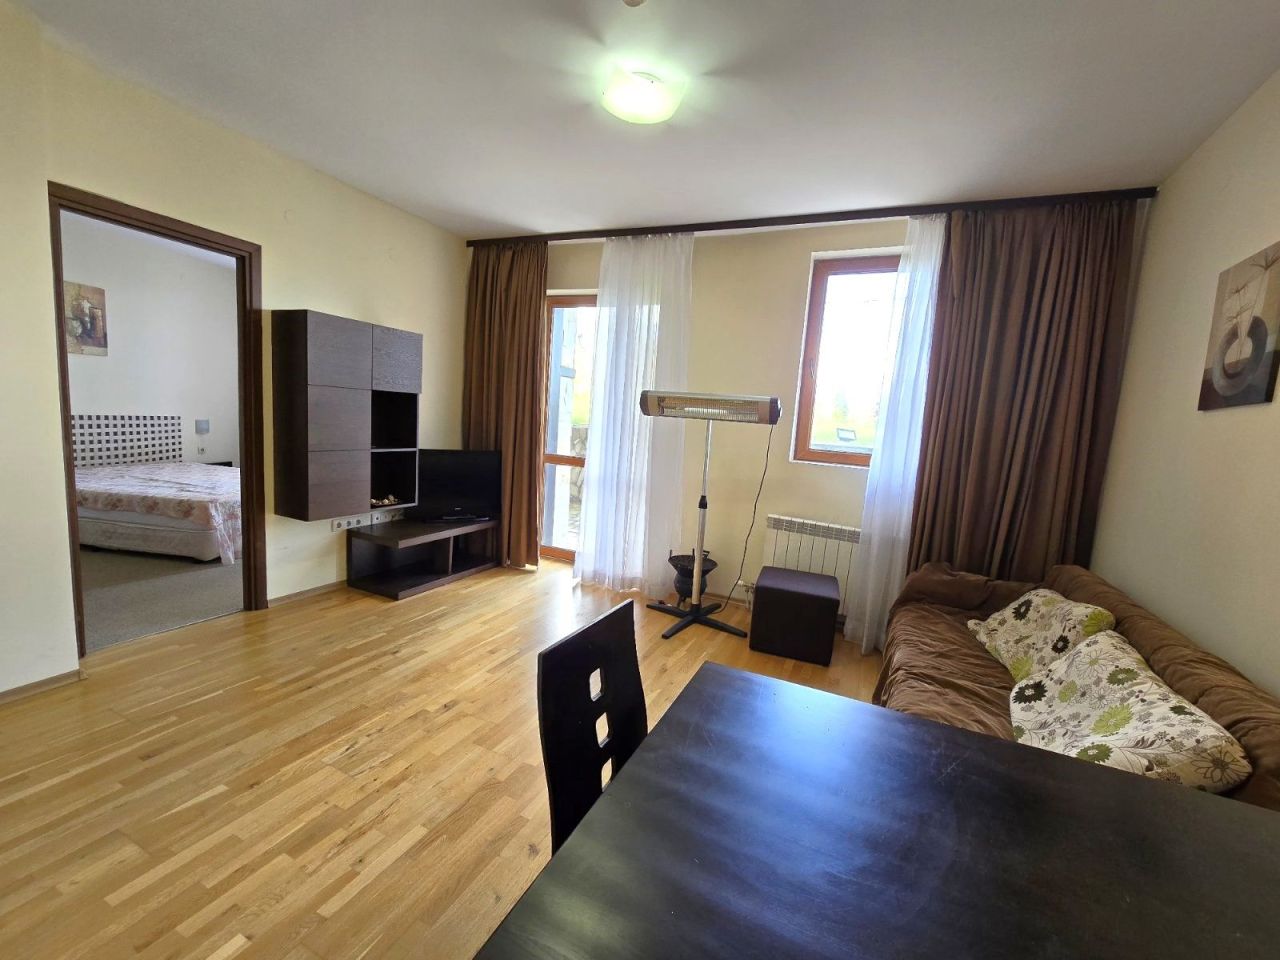 Apartment in Bansko, Bulgaria, 77 sq.m - picture 1